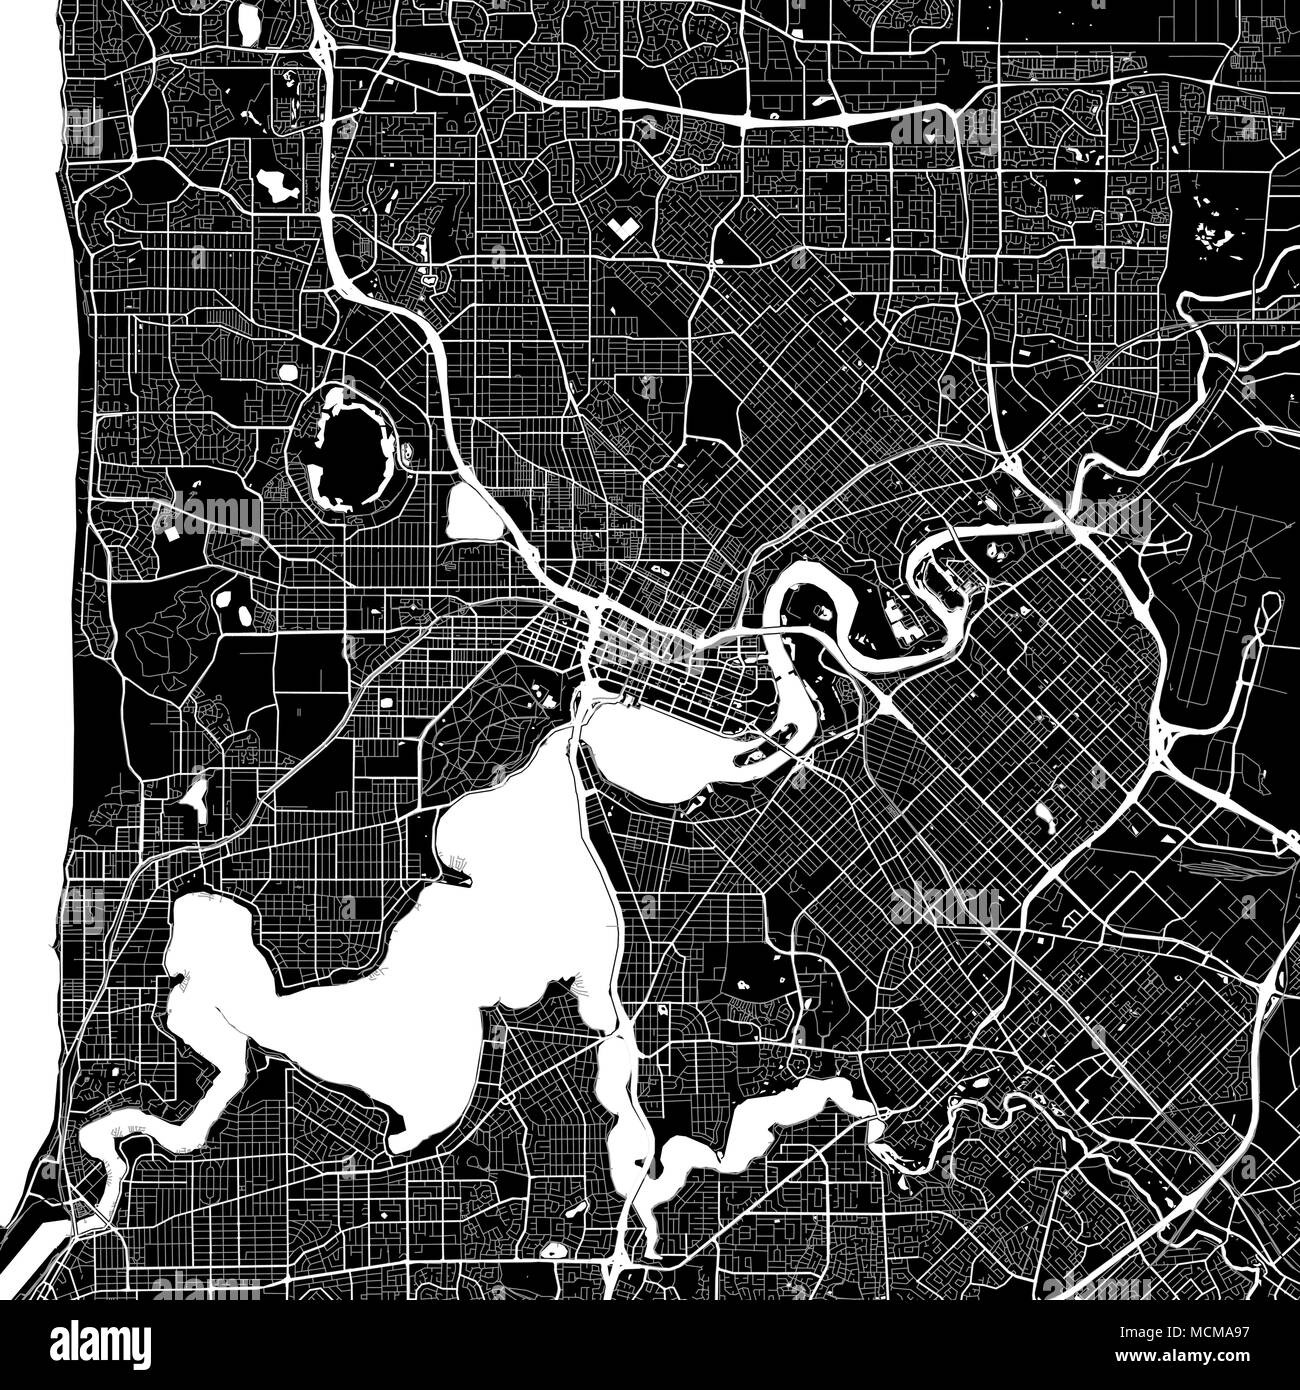 Lageplan von Perth, Australien. Der dunkle Hintergrund Version für Infografik und Marketing Projekte. Diese Karte von Perth, Western Australia, enthält typische l Stock Vektor